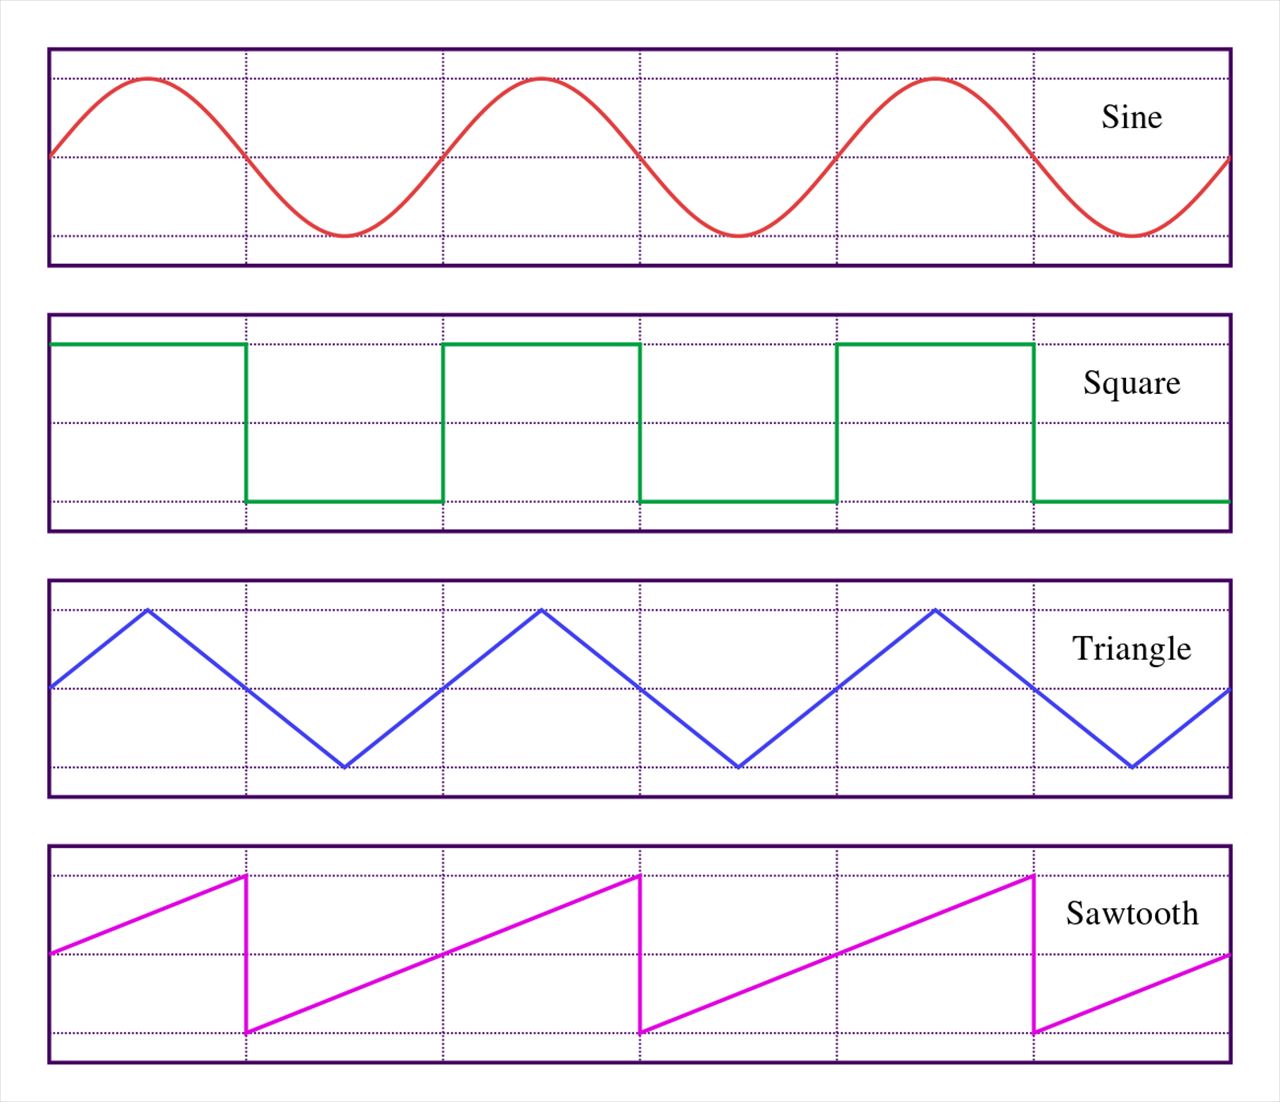 上からサイン波、矩形波、三角波、ノコギリ波。本書でこれらの波形や音源について基礎的な説明がなされている。画像出典: Wikipedia「矩形波」